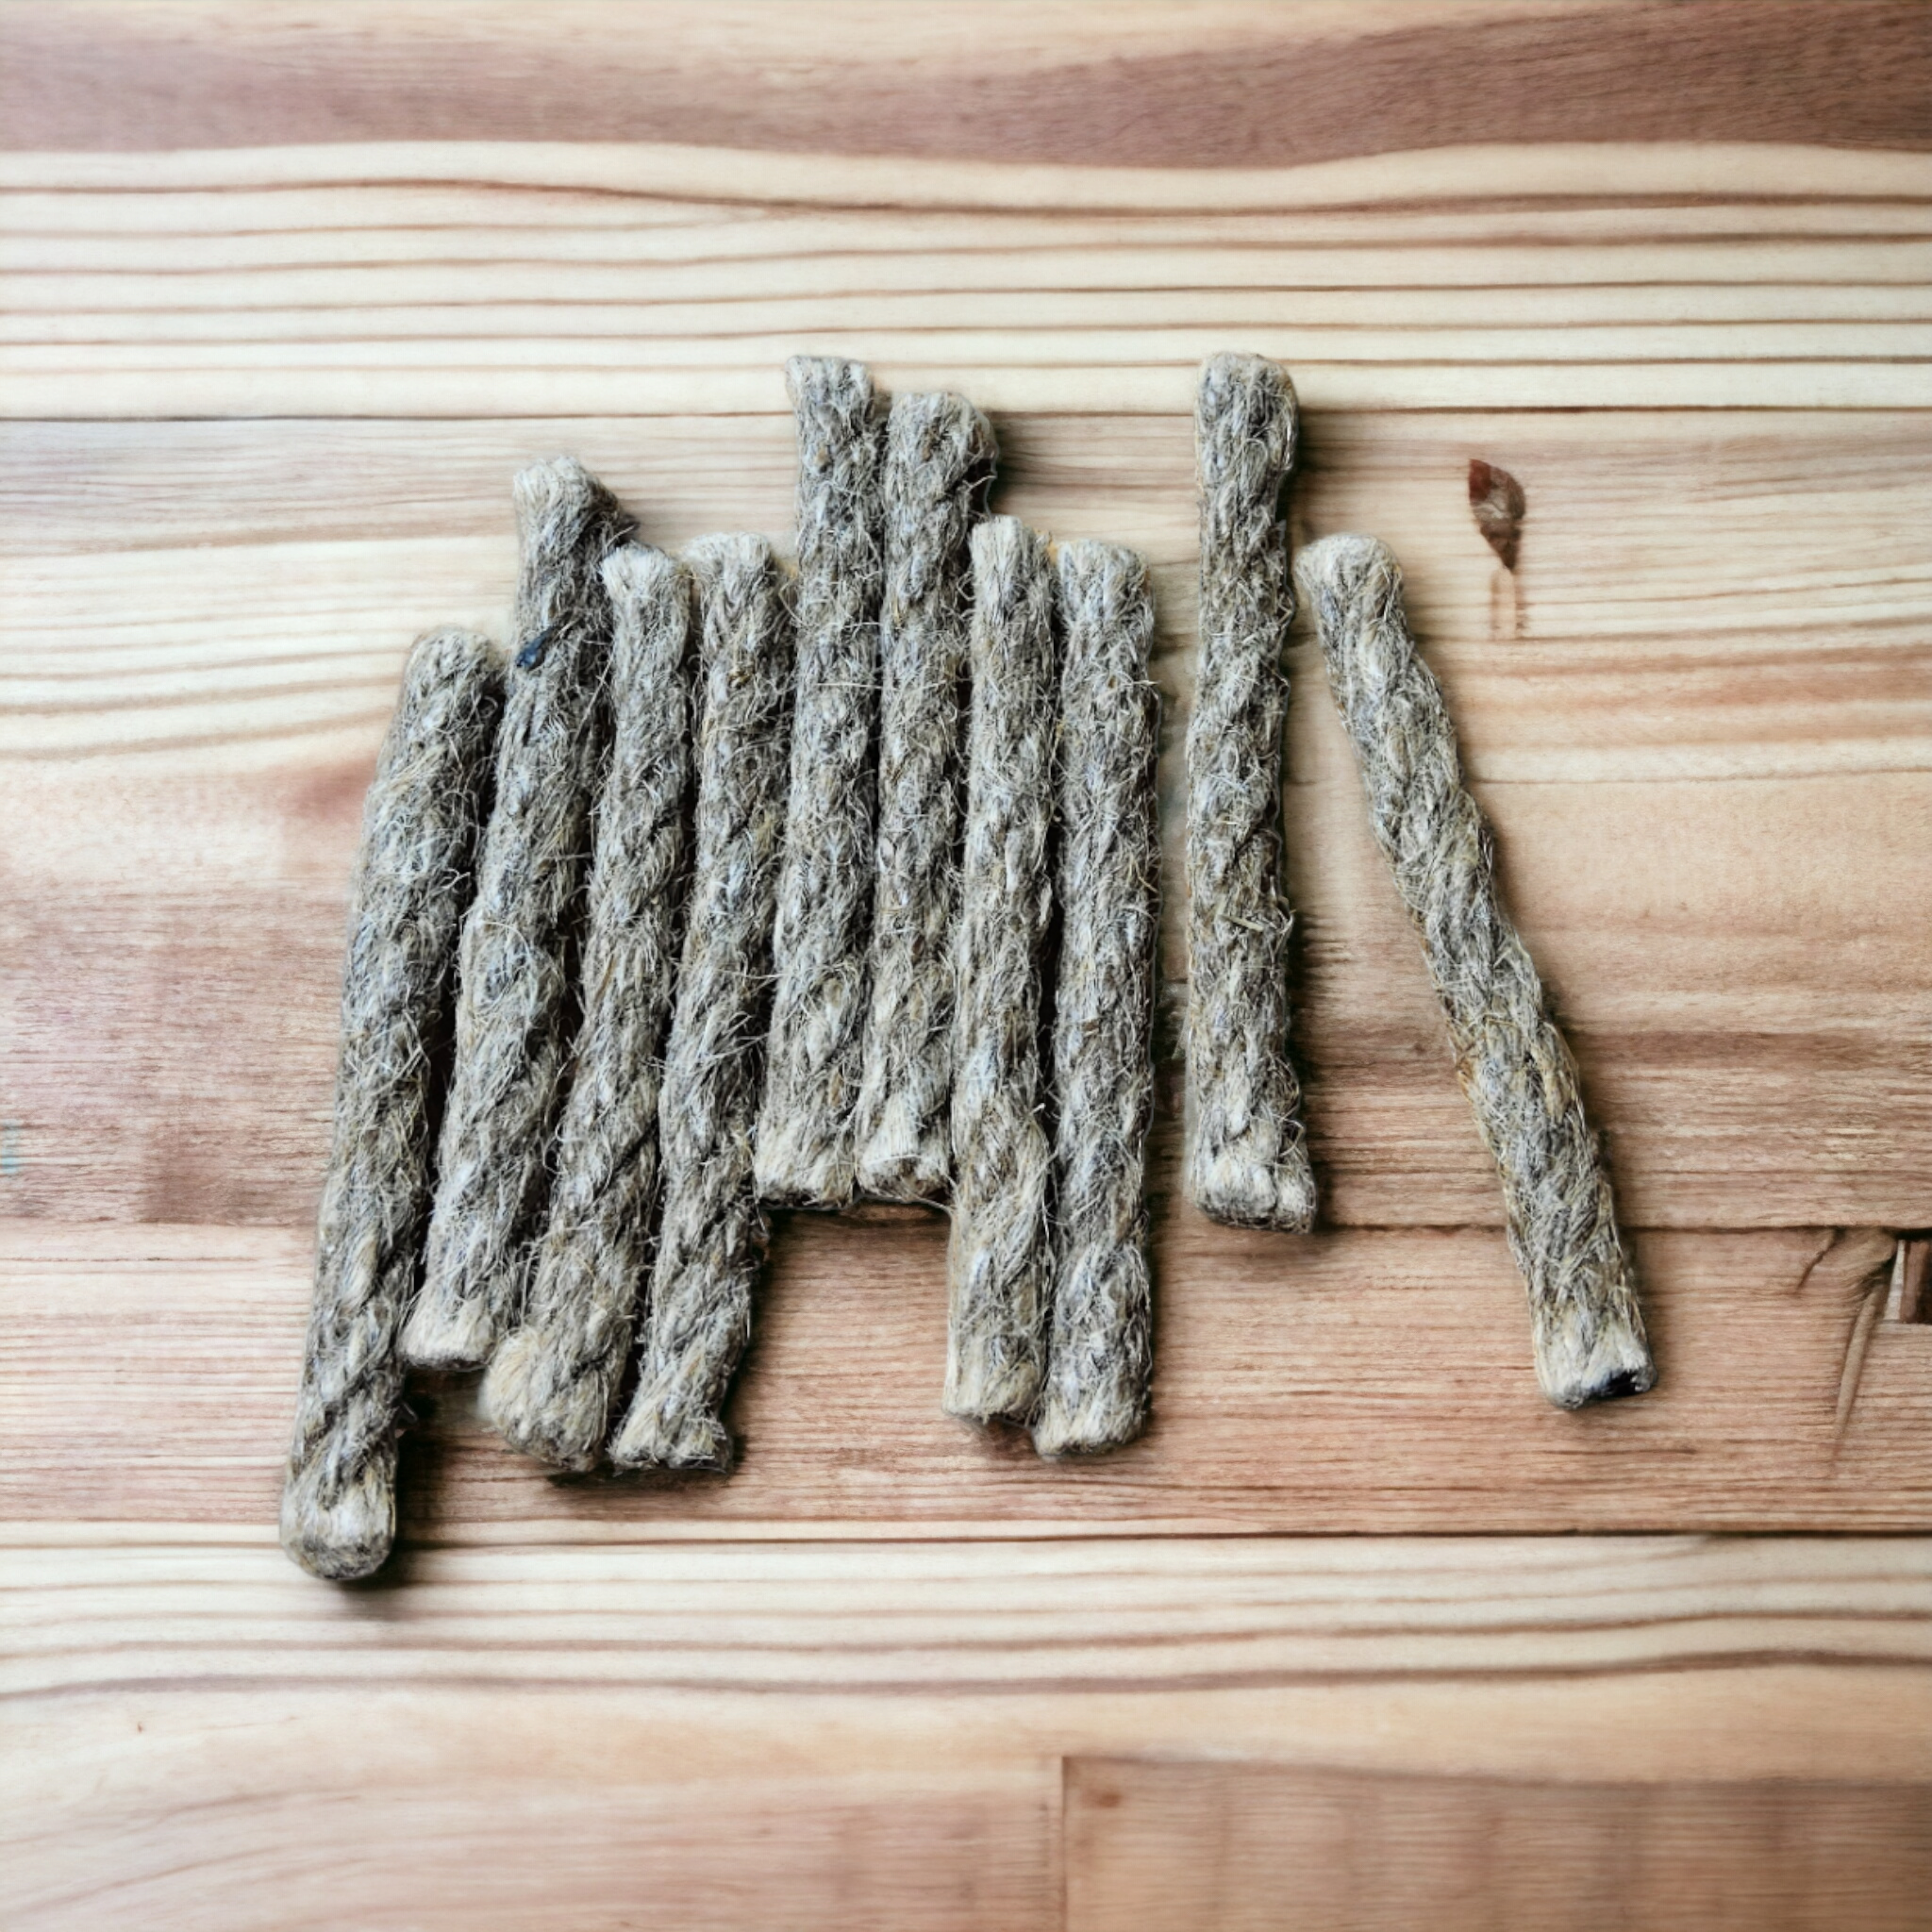 Natural Tinder Rope Firestarter